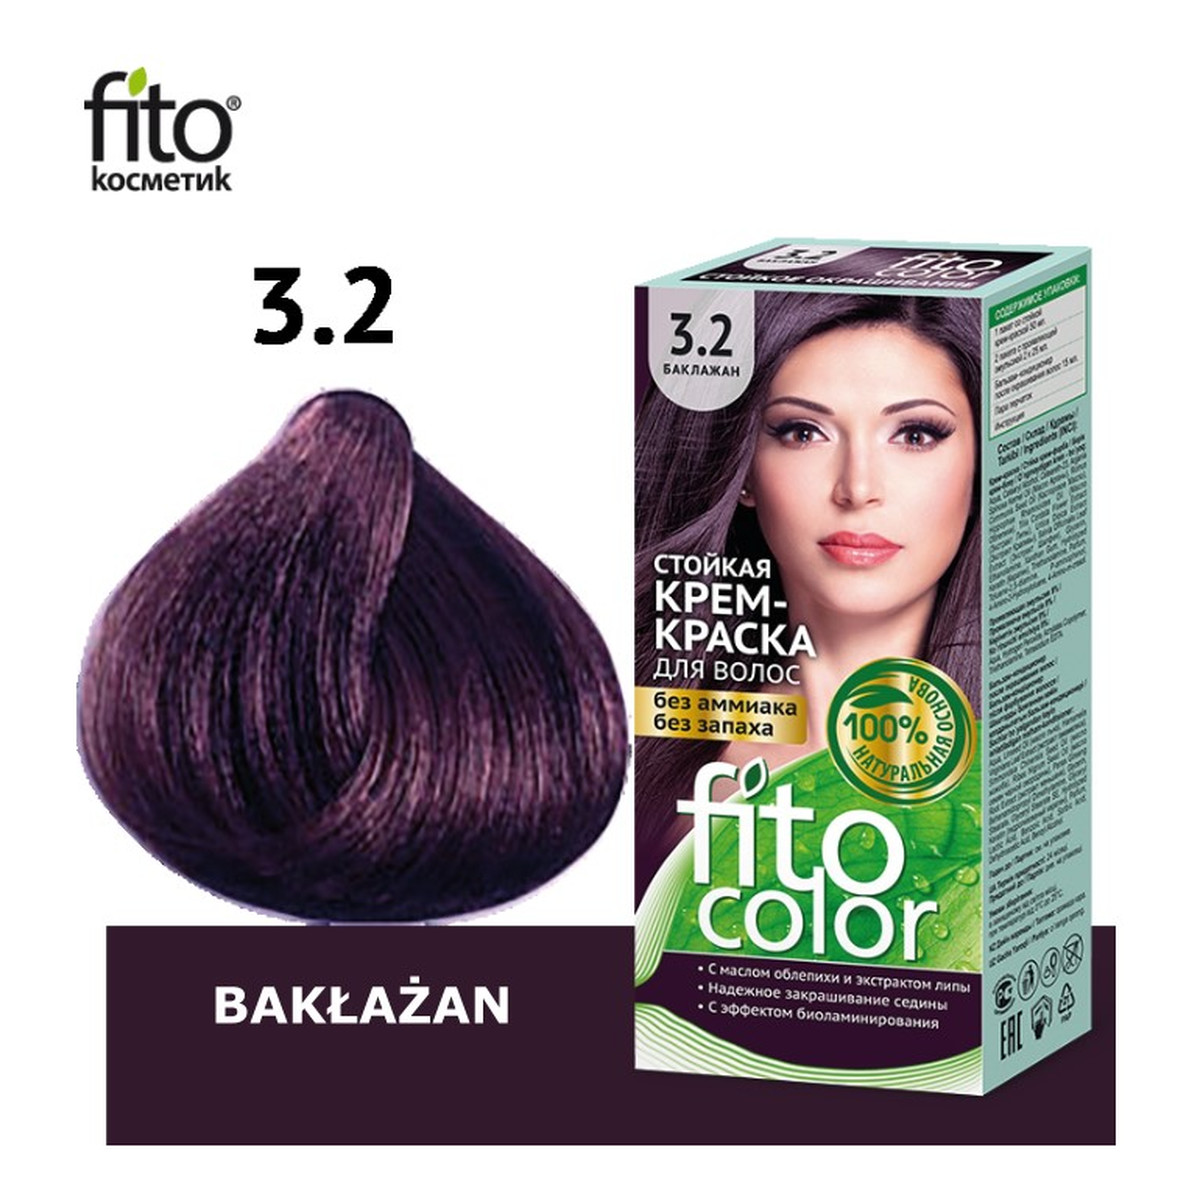 Fitokosmetik FitoColor farba do włosów trwała w kremie Bakłażan (3.2)